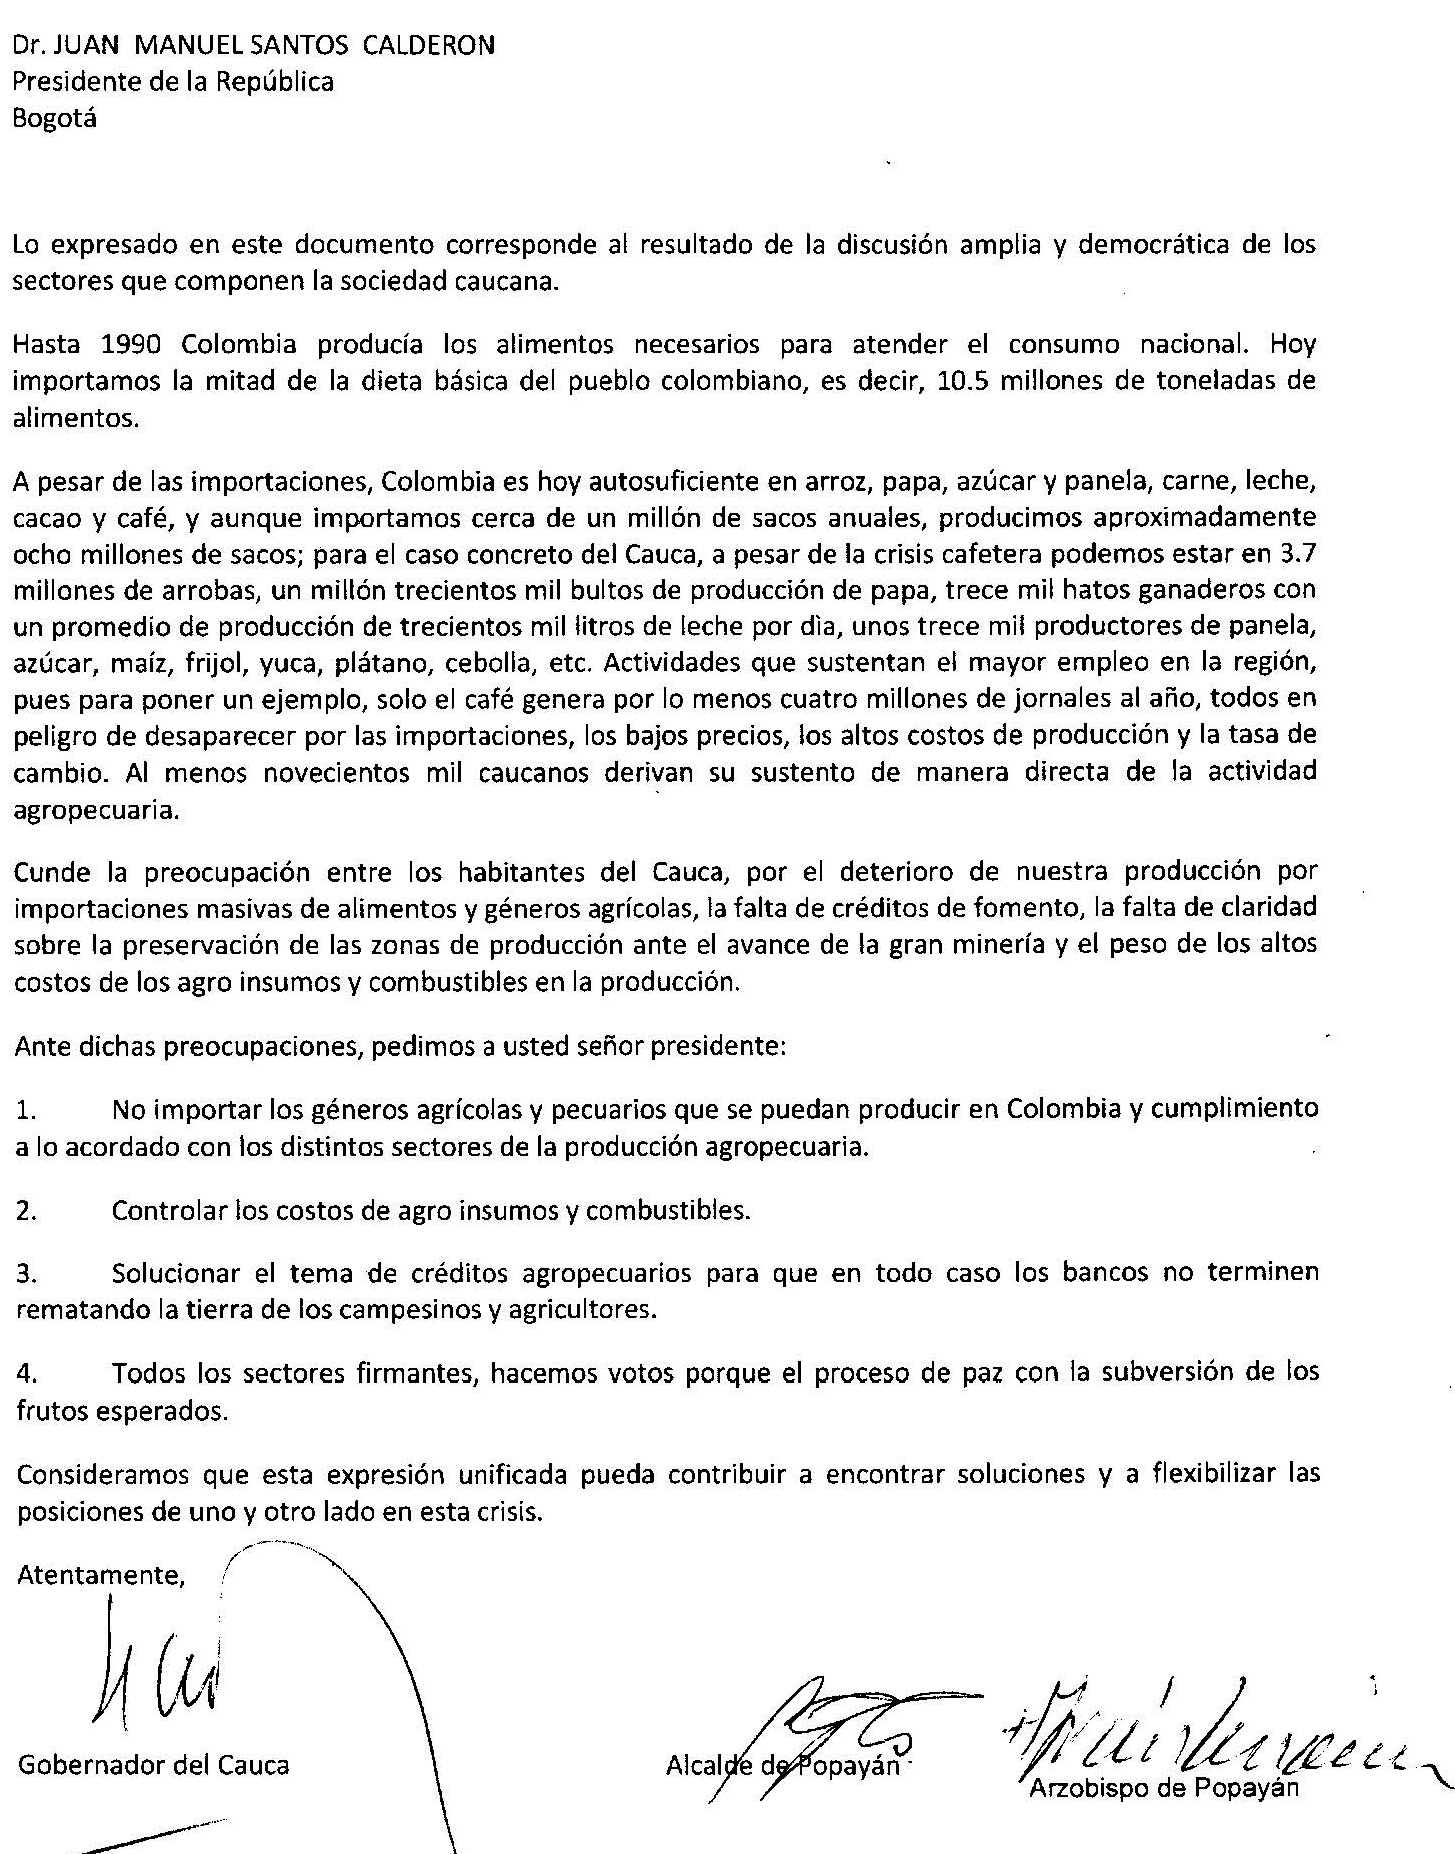 PRESIDENTE DE LA REPUBLICA DR JUAN MANUEL SANTOS CALDERON (2)_Page_1 - S.O.S en el Cauca